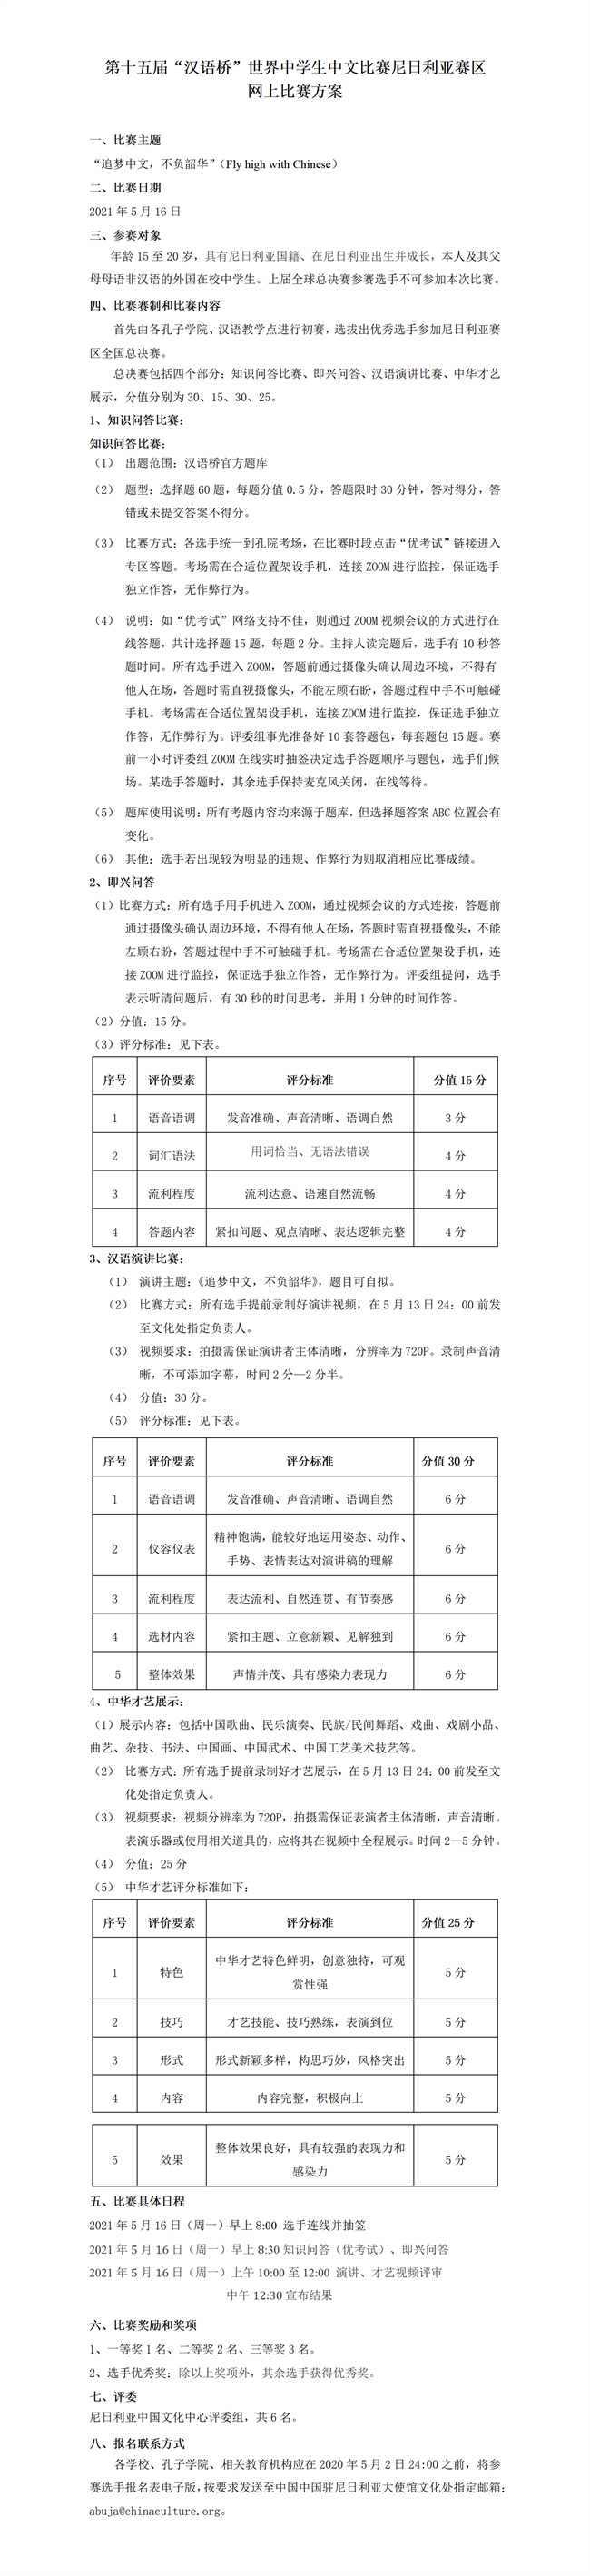 第十五届汉语桥世界中学生中文比赛尼日利亚赛区网上比赛方案_01.png